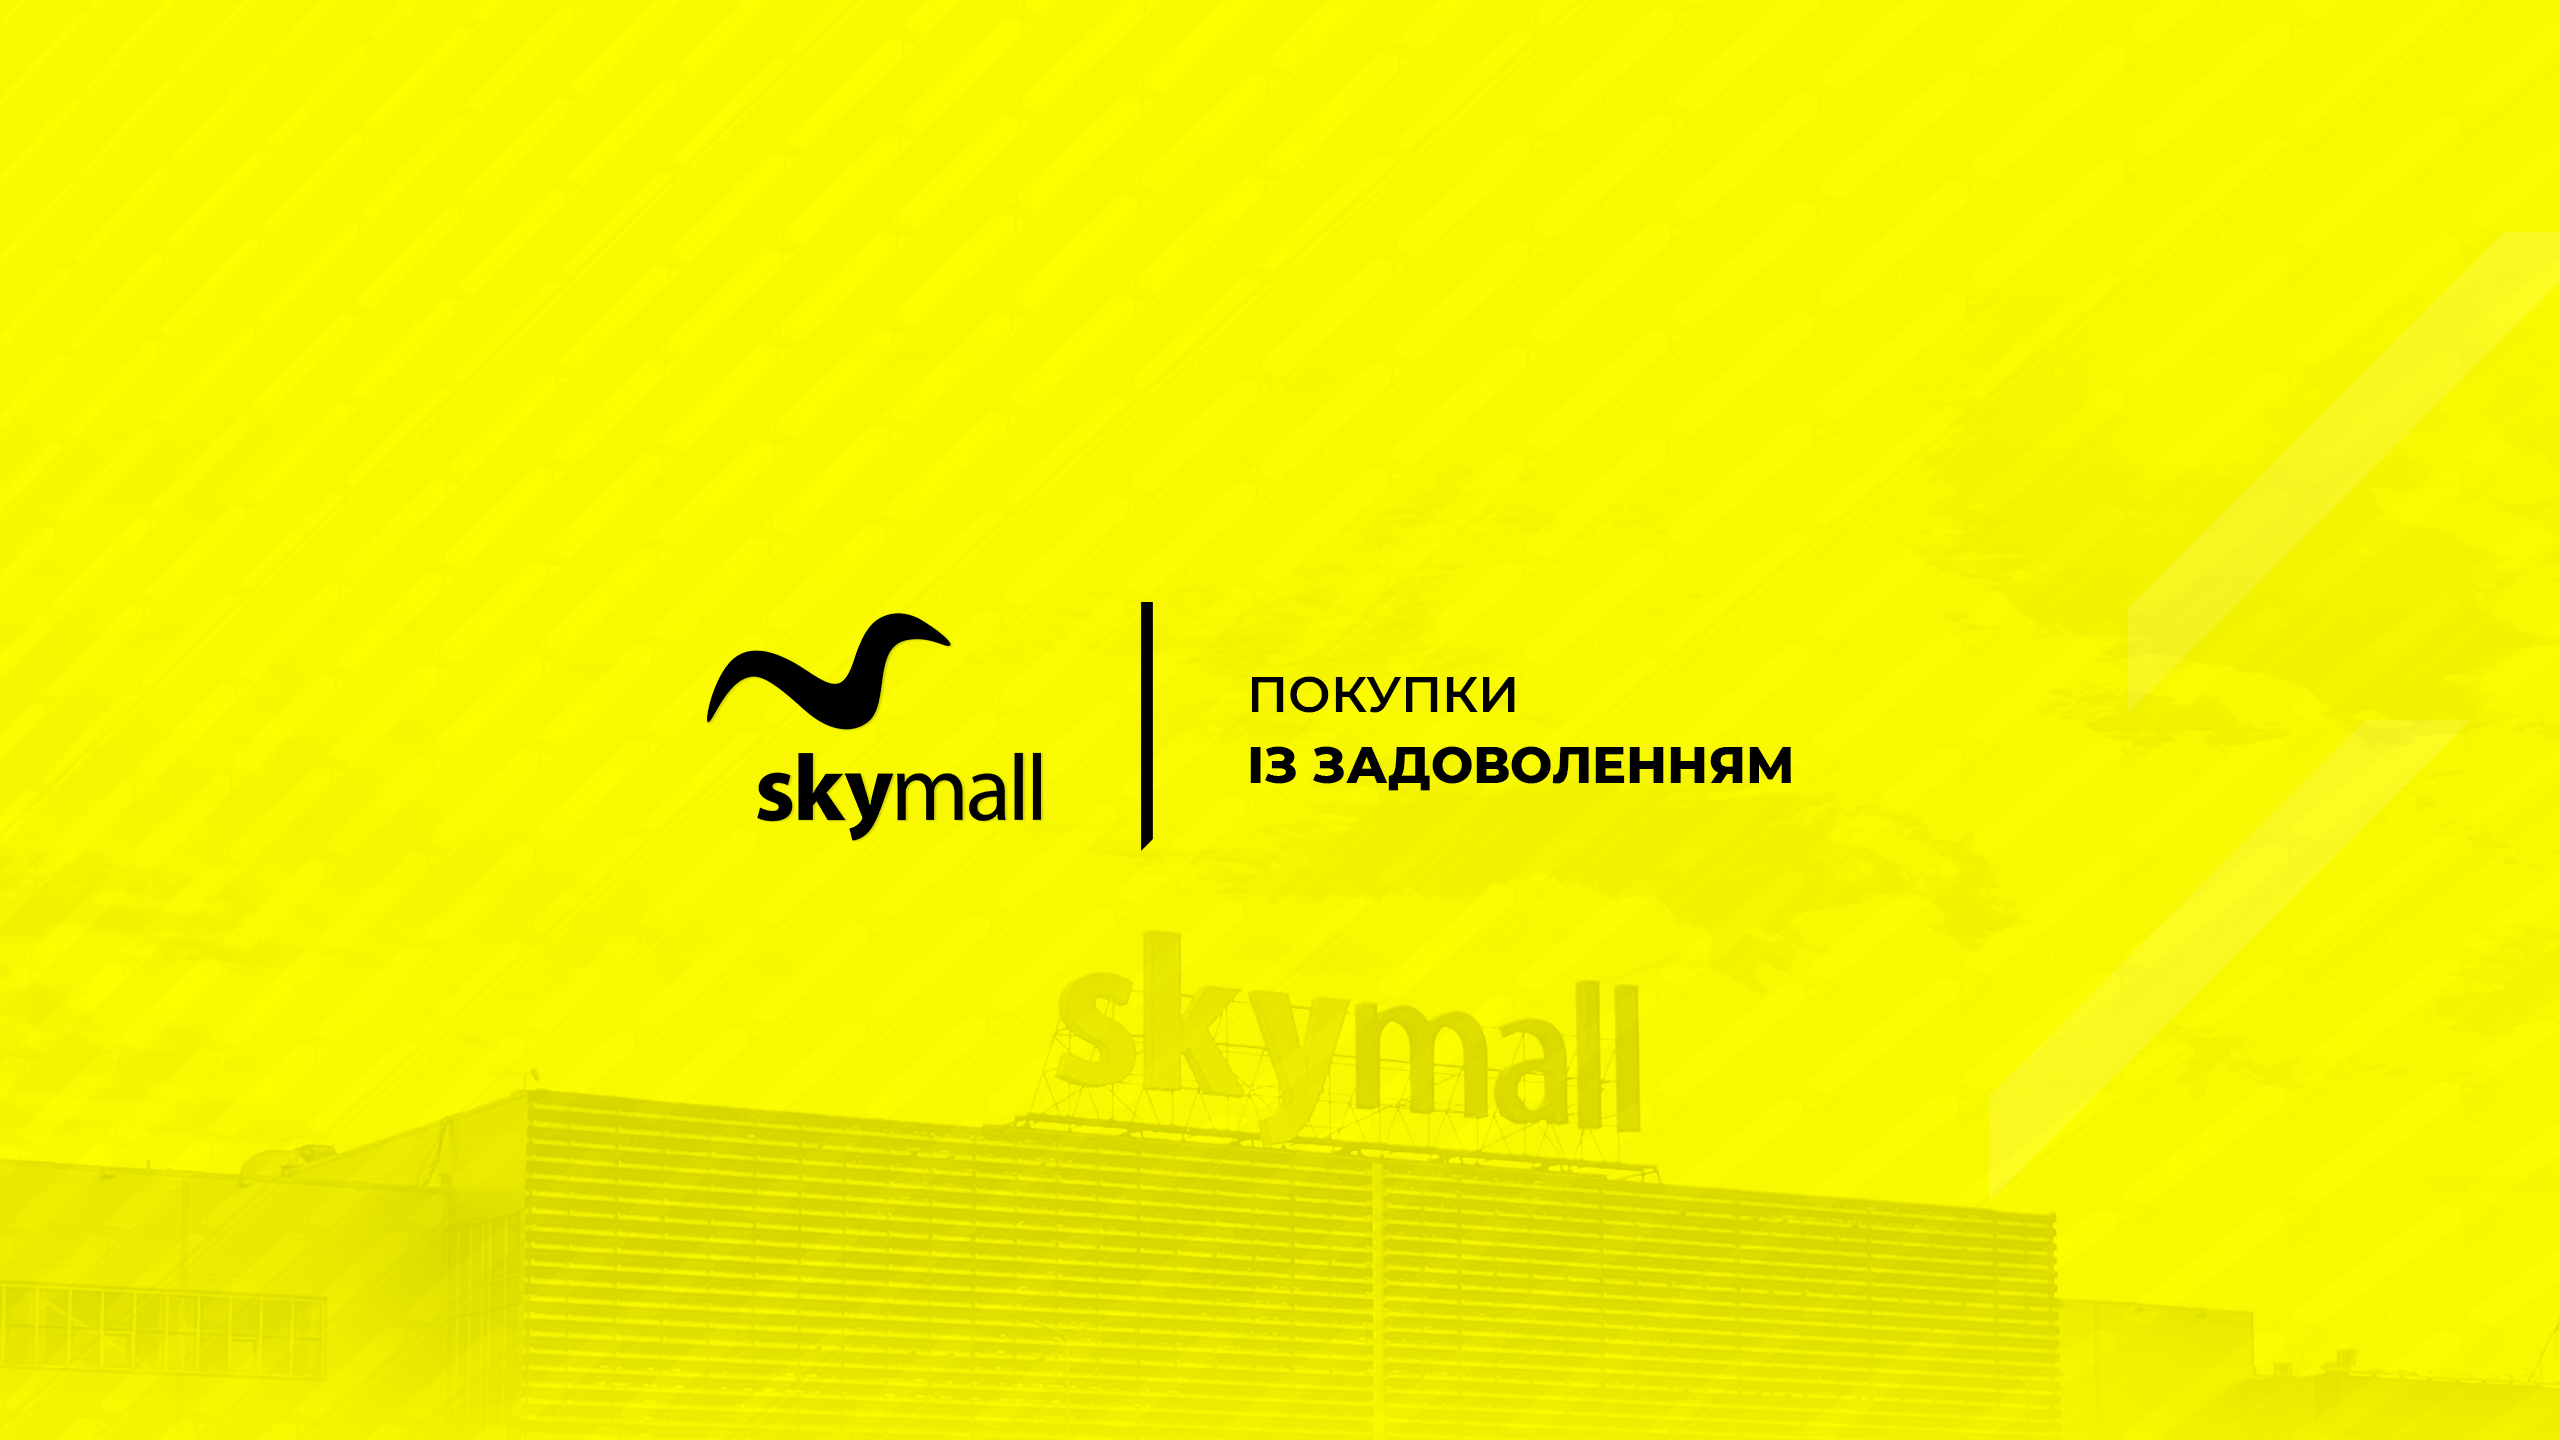 Sky Mall TV – перший в Україні відеогід вигідного шопінгу та дозвілля - Новини Києва - Київ